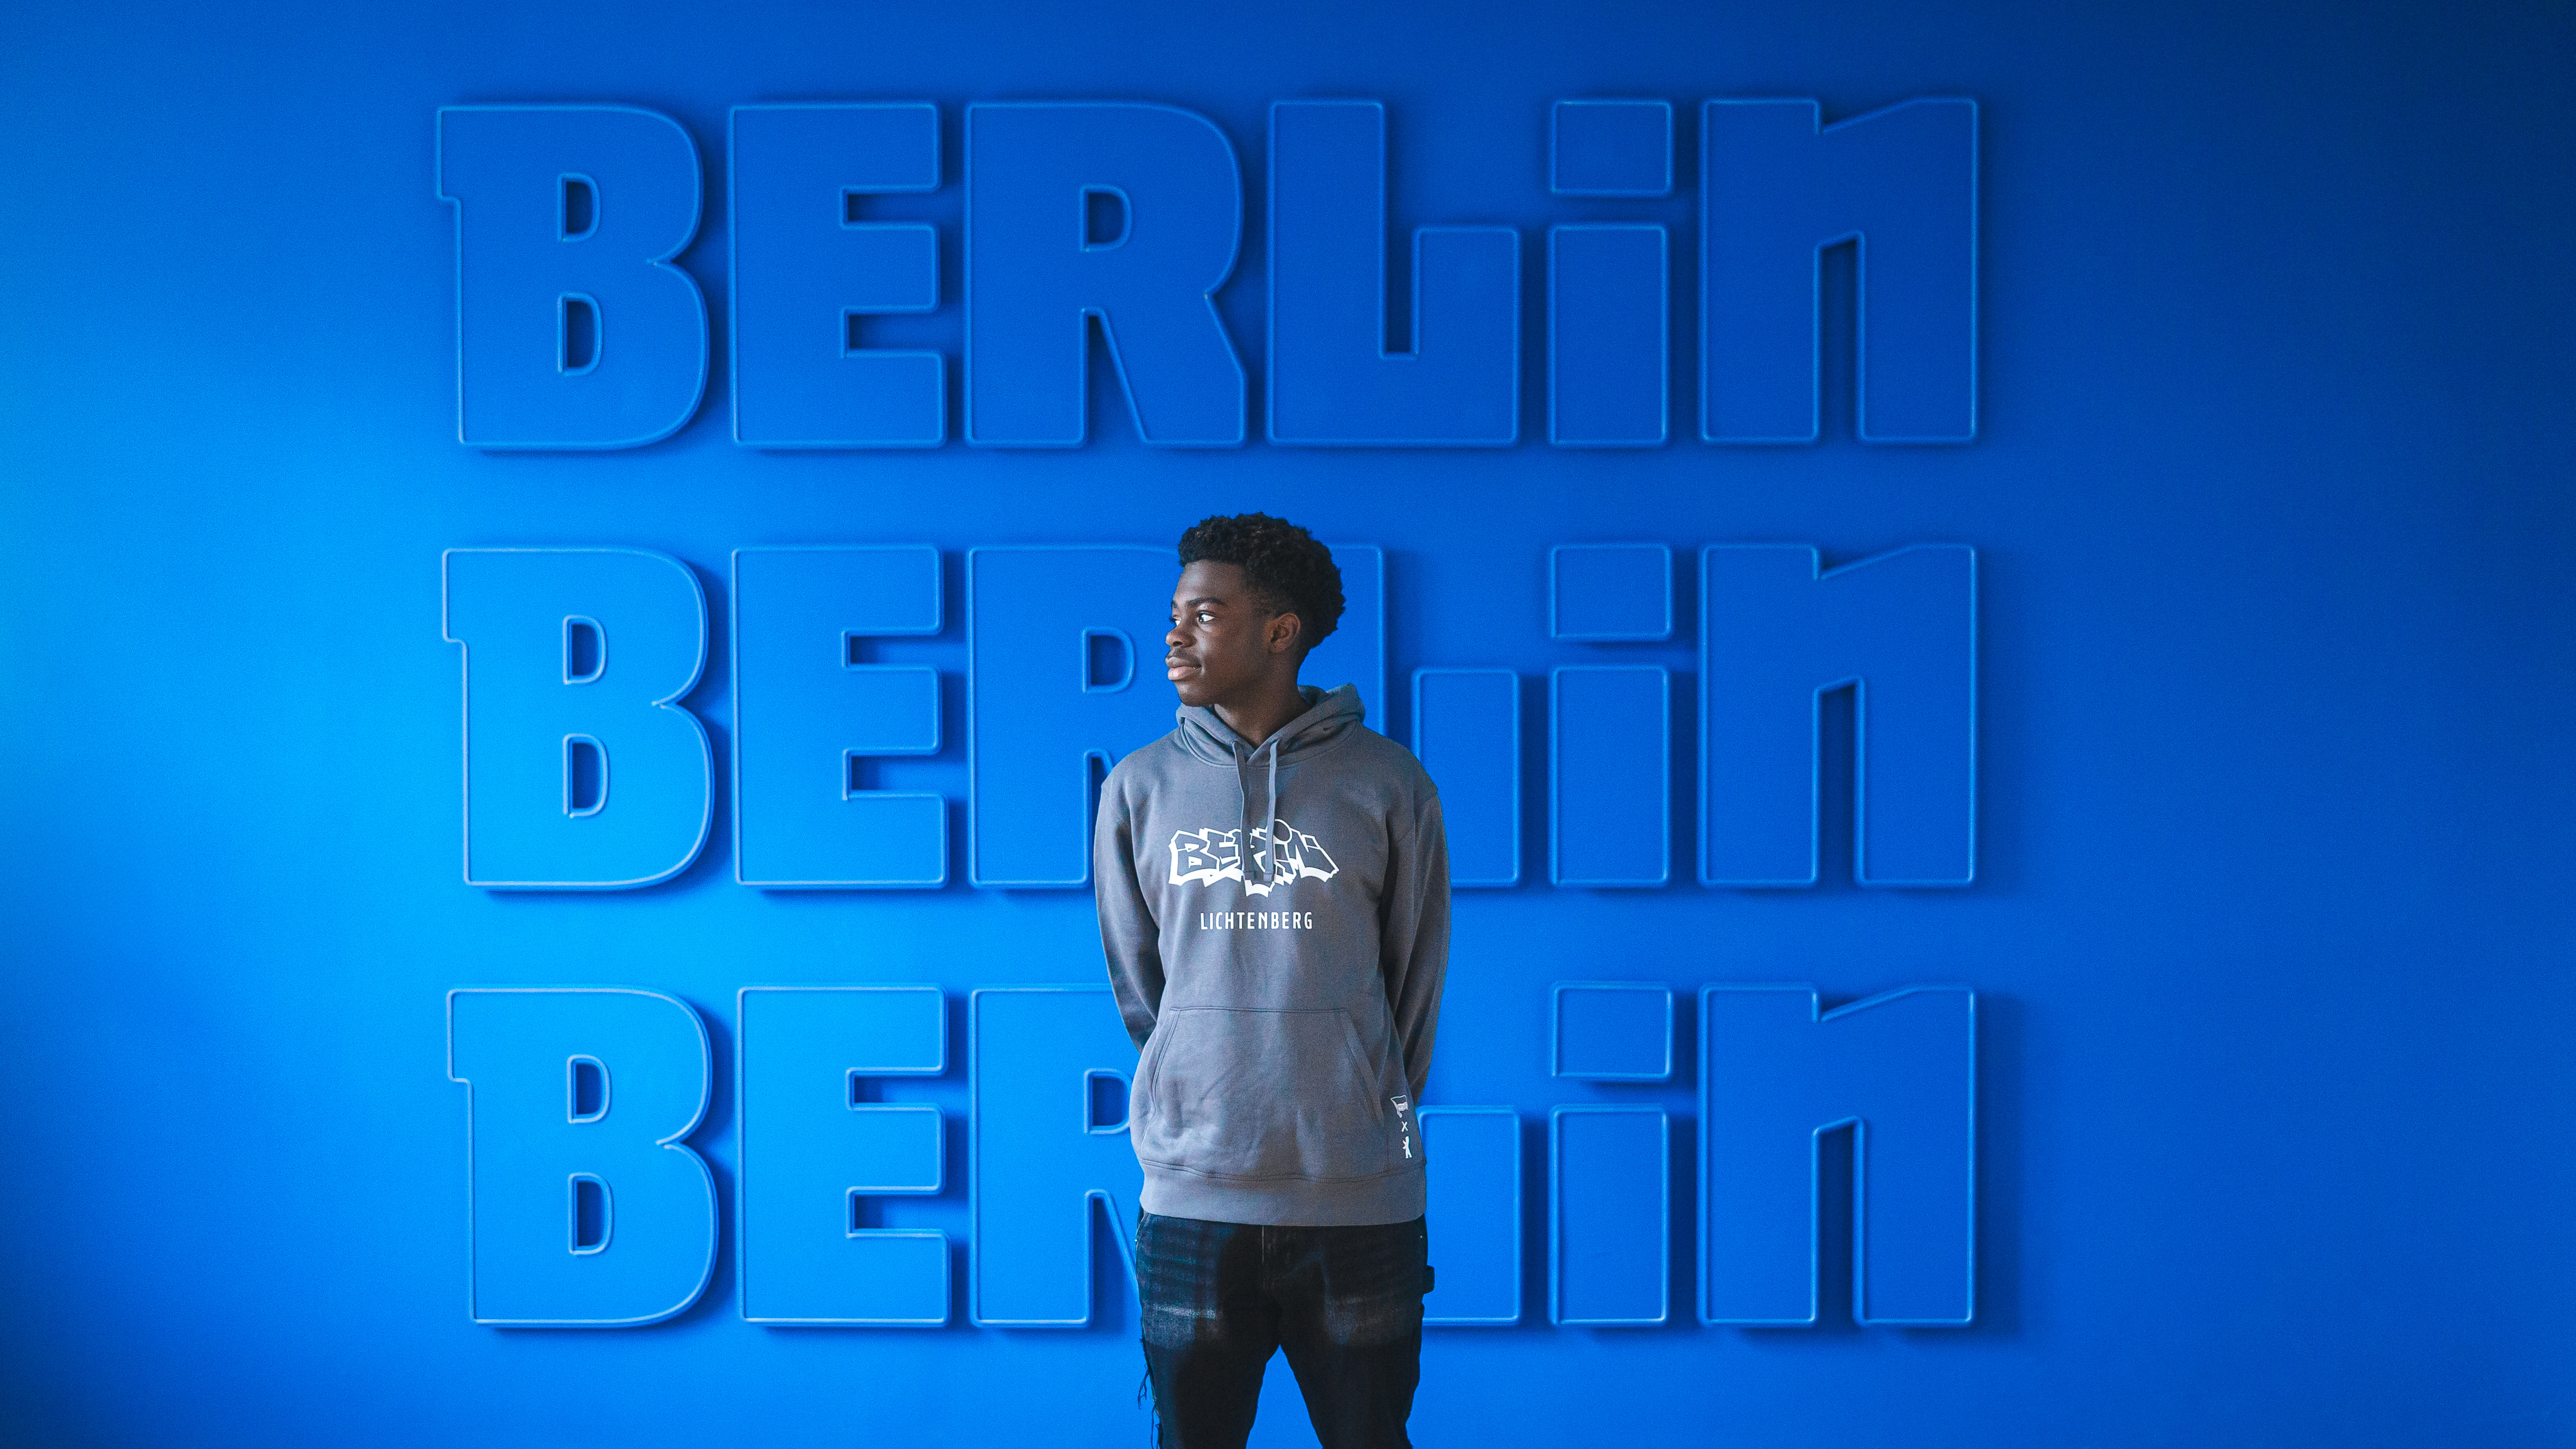 Boris Mamuzah Lum vor der blau-weißen Wand an der Geschäftsstelle.